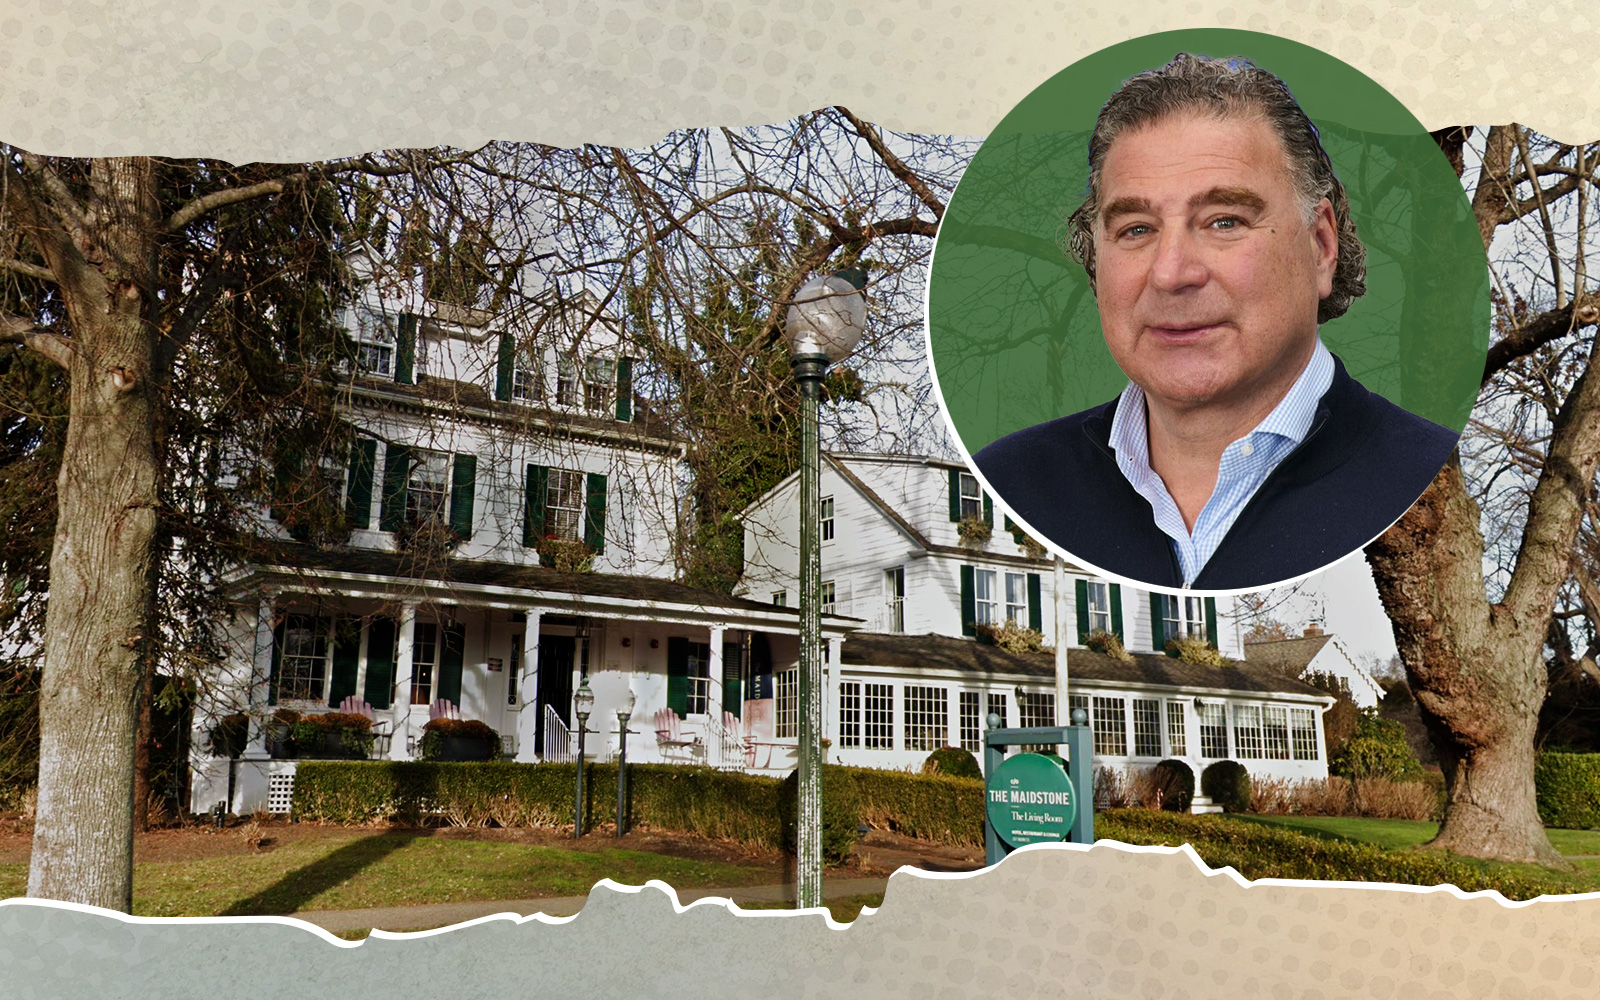 Pharma CEO buys East Hampton’s Maidstone Hotel